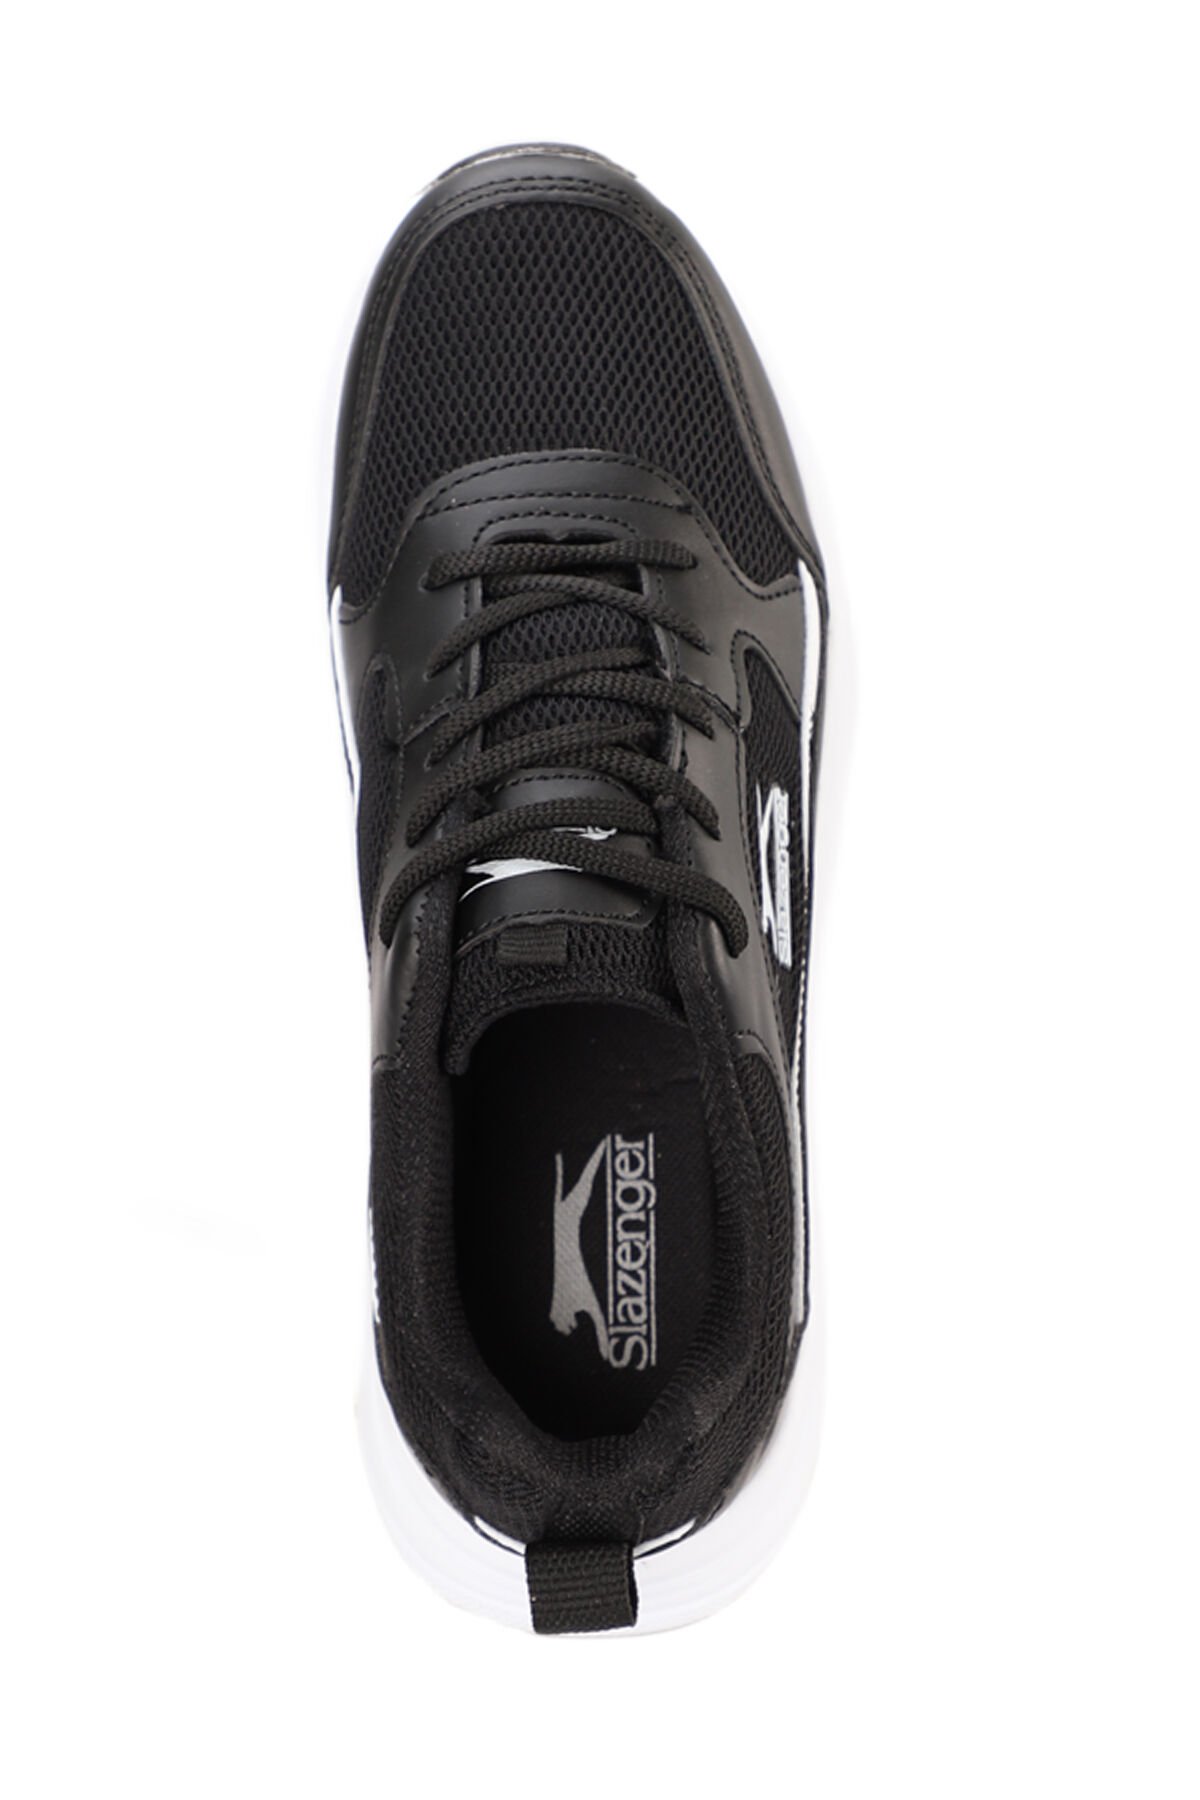 Slazenger KAROLA I Sneaker Kadın Ayakkabı Siyah / Beyaz - Thumbnail